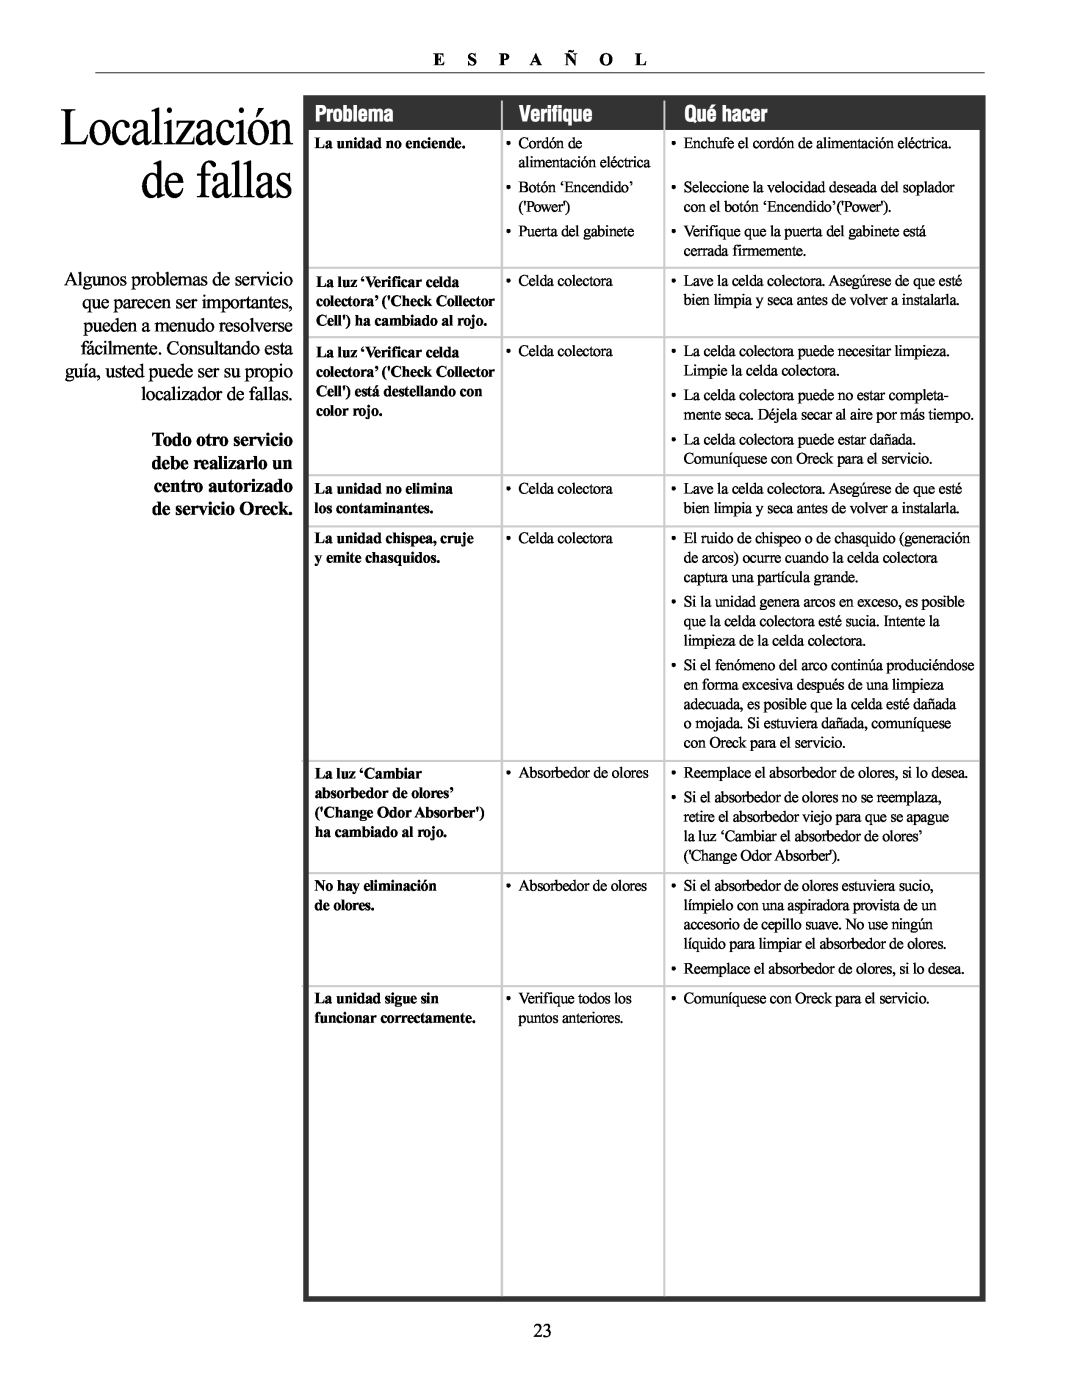 Oreck 20061-01Rev.A manual Localización de fallas, Problema, Verifique, Qué hacer, E S P A Ñ O L 